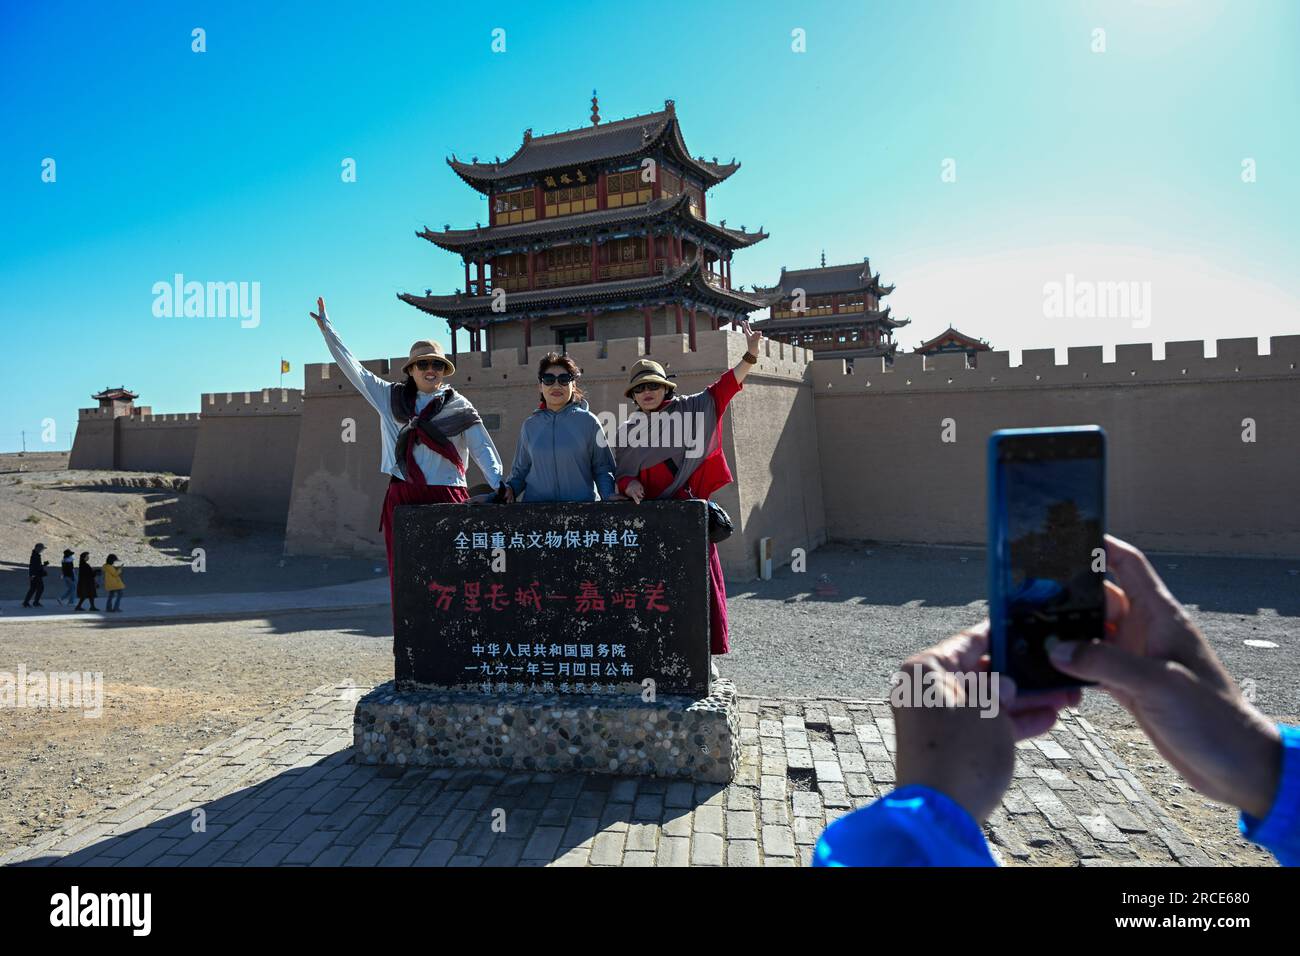 Jiayuguan, provincia cinese del Gansu. 13 luglio 2023. I turisti visitano il passo Jiayu nella città di Jiayuguan, provincia del Gansu della Cina nord-occidentale, 13 luglio 2023. Il passo Jiayu, una famosa parte della grande Muraglia costruita durante la Dinastia Ming (1368-1644), ha attirato molti visitatori durante la stagione turistica estiva. Crediti: Liu Jinhai/Xinhua/Alamy Live News Foto Stock